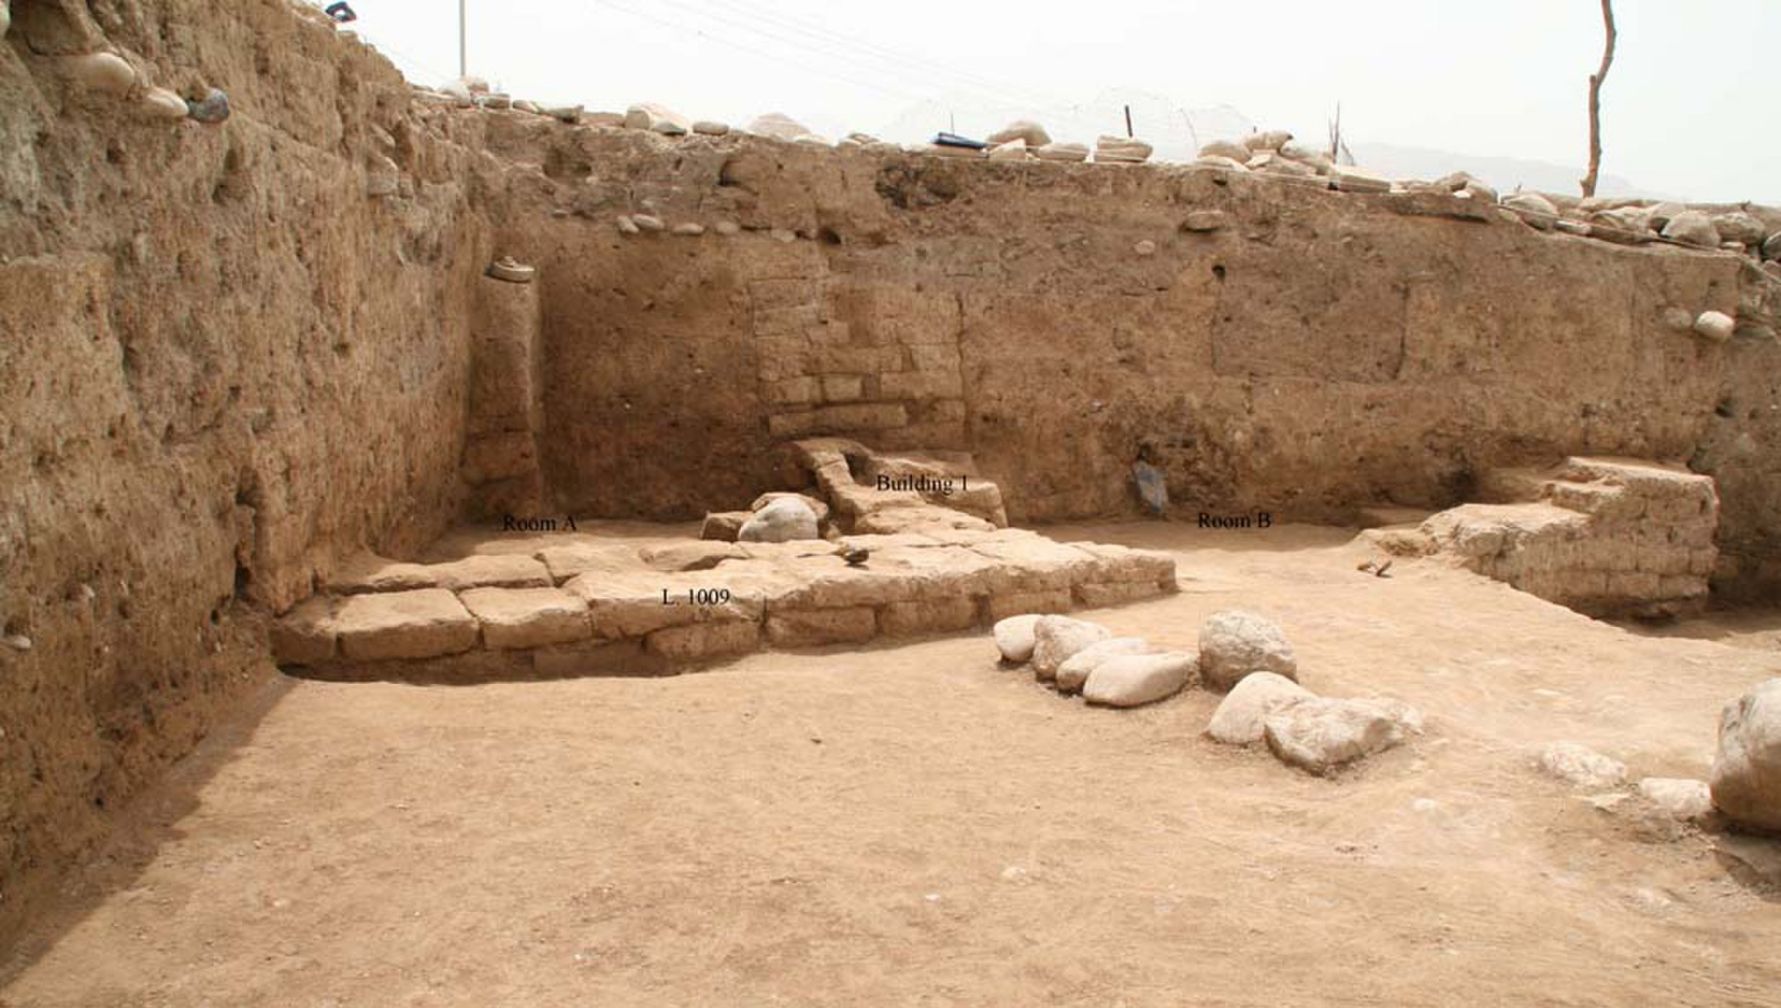 Археолози в района на Кюрдистан в Северен Ирак откриха древен град, наречен "Иду". Мястото е било обитавано още през периода на неолита, когато земеделието се е появило за първи път в Близкия изток, а градът е достигнал най-голямата си степен между 3,300 и 2,900 години. Сградата, показана тук, е домашна структура, с поне две стаи, която може да датира от относително късен живот на града, може би преди около 2,000 години, когато Партската империя контролира района.